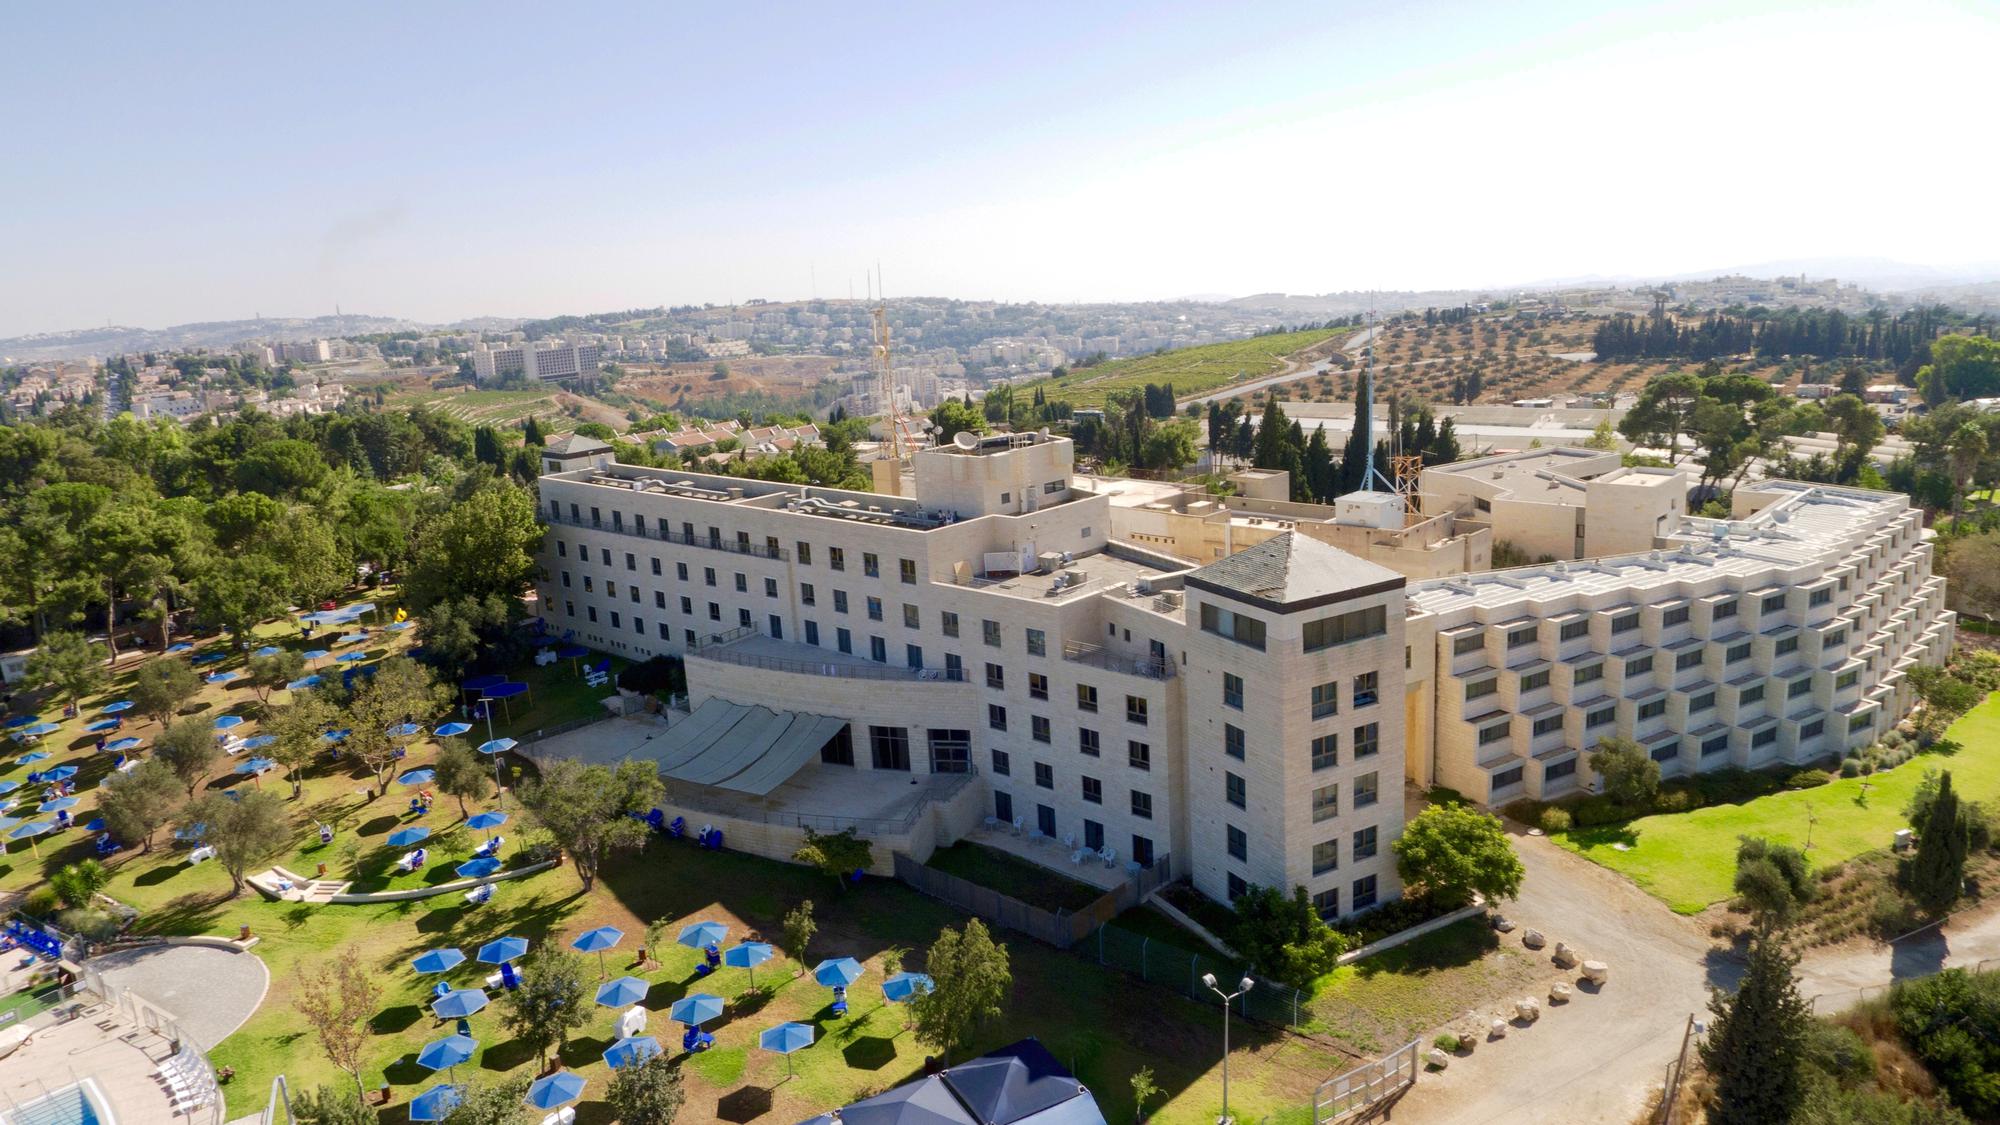 מלון רמת רחל בו ייפתח בית הספר החדש למלונאות 'ירושלם'. צילום: יח"צ